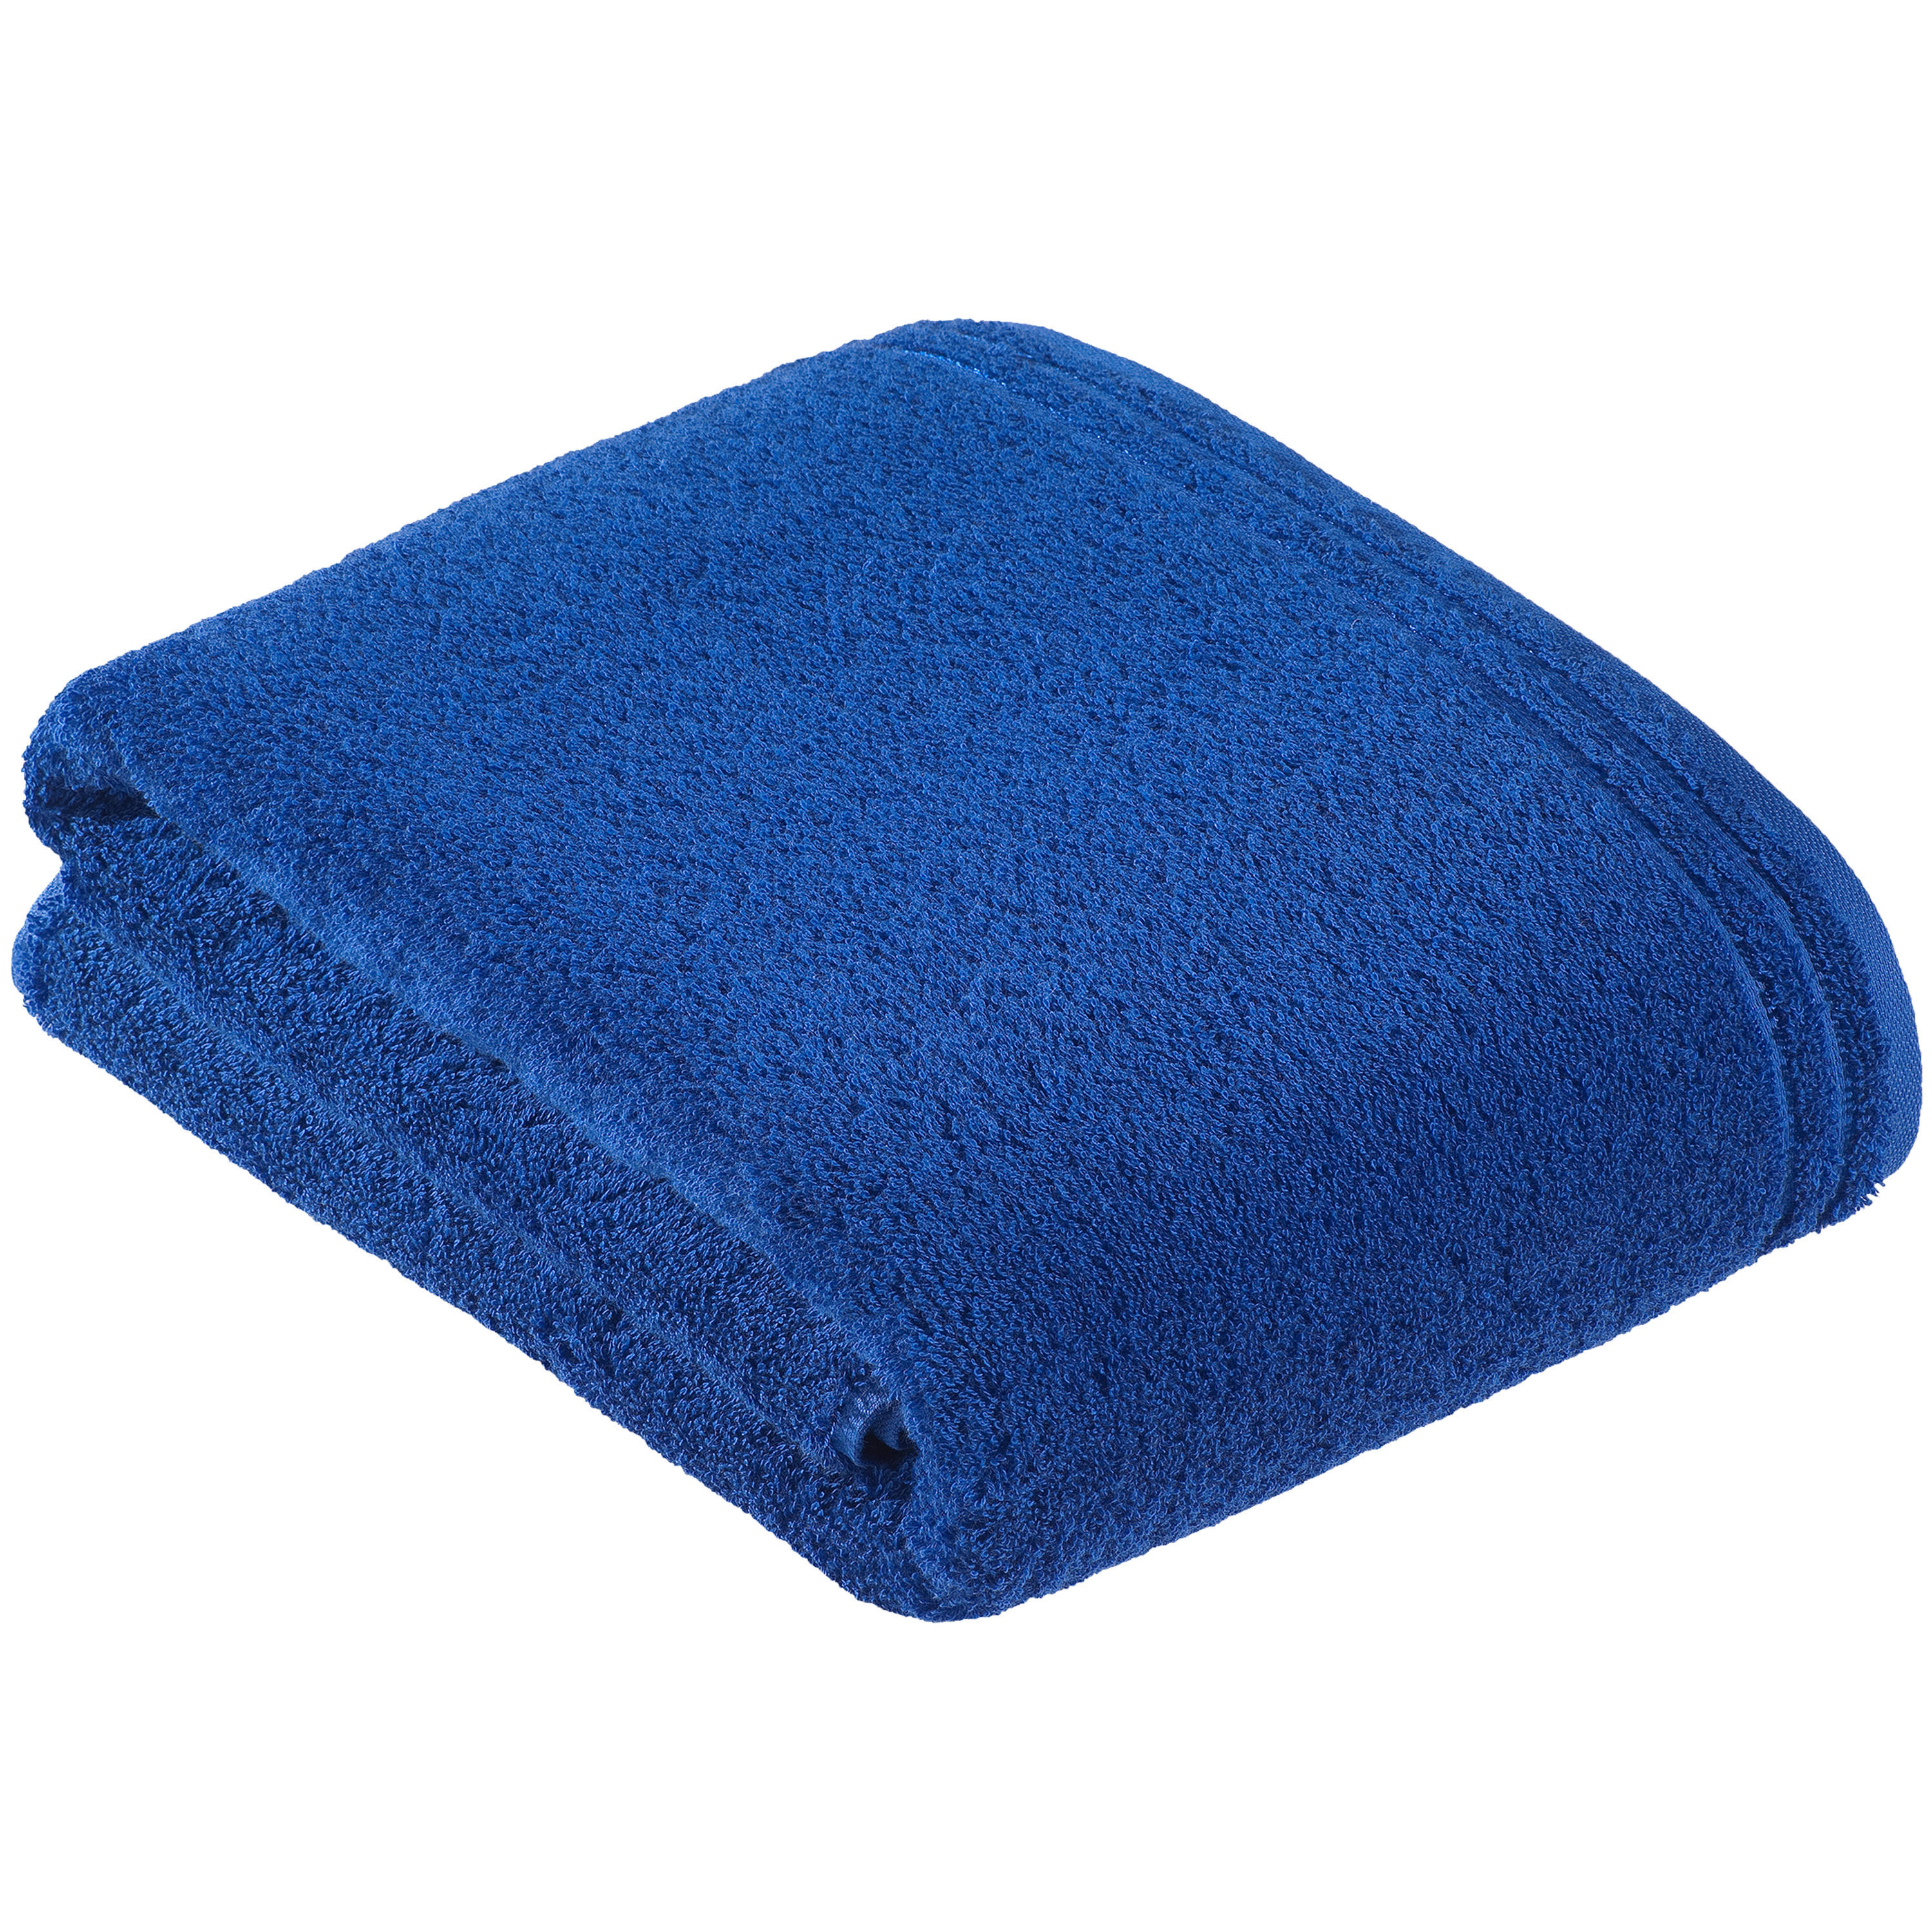 SAUNATUCH Calypso Feeling NOS Vossen Wäsche  - Blau, Basics, Textil (200/80cm) - Vossen